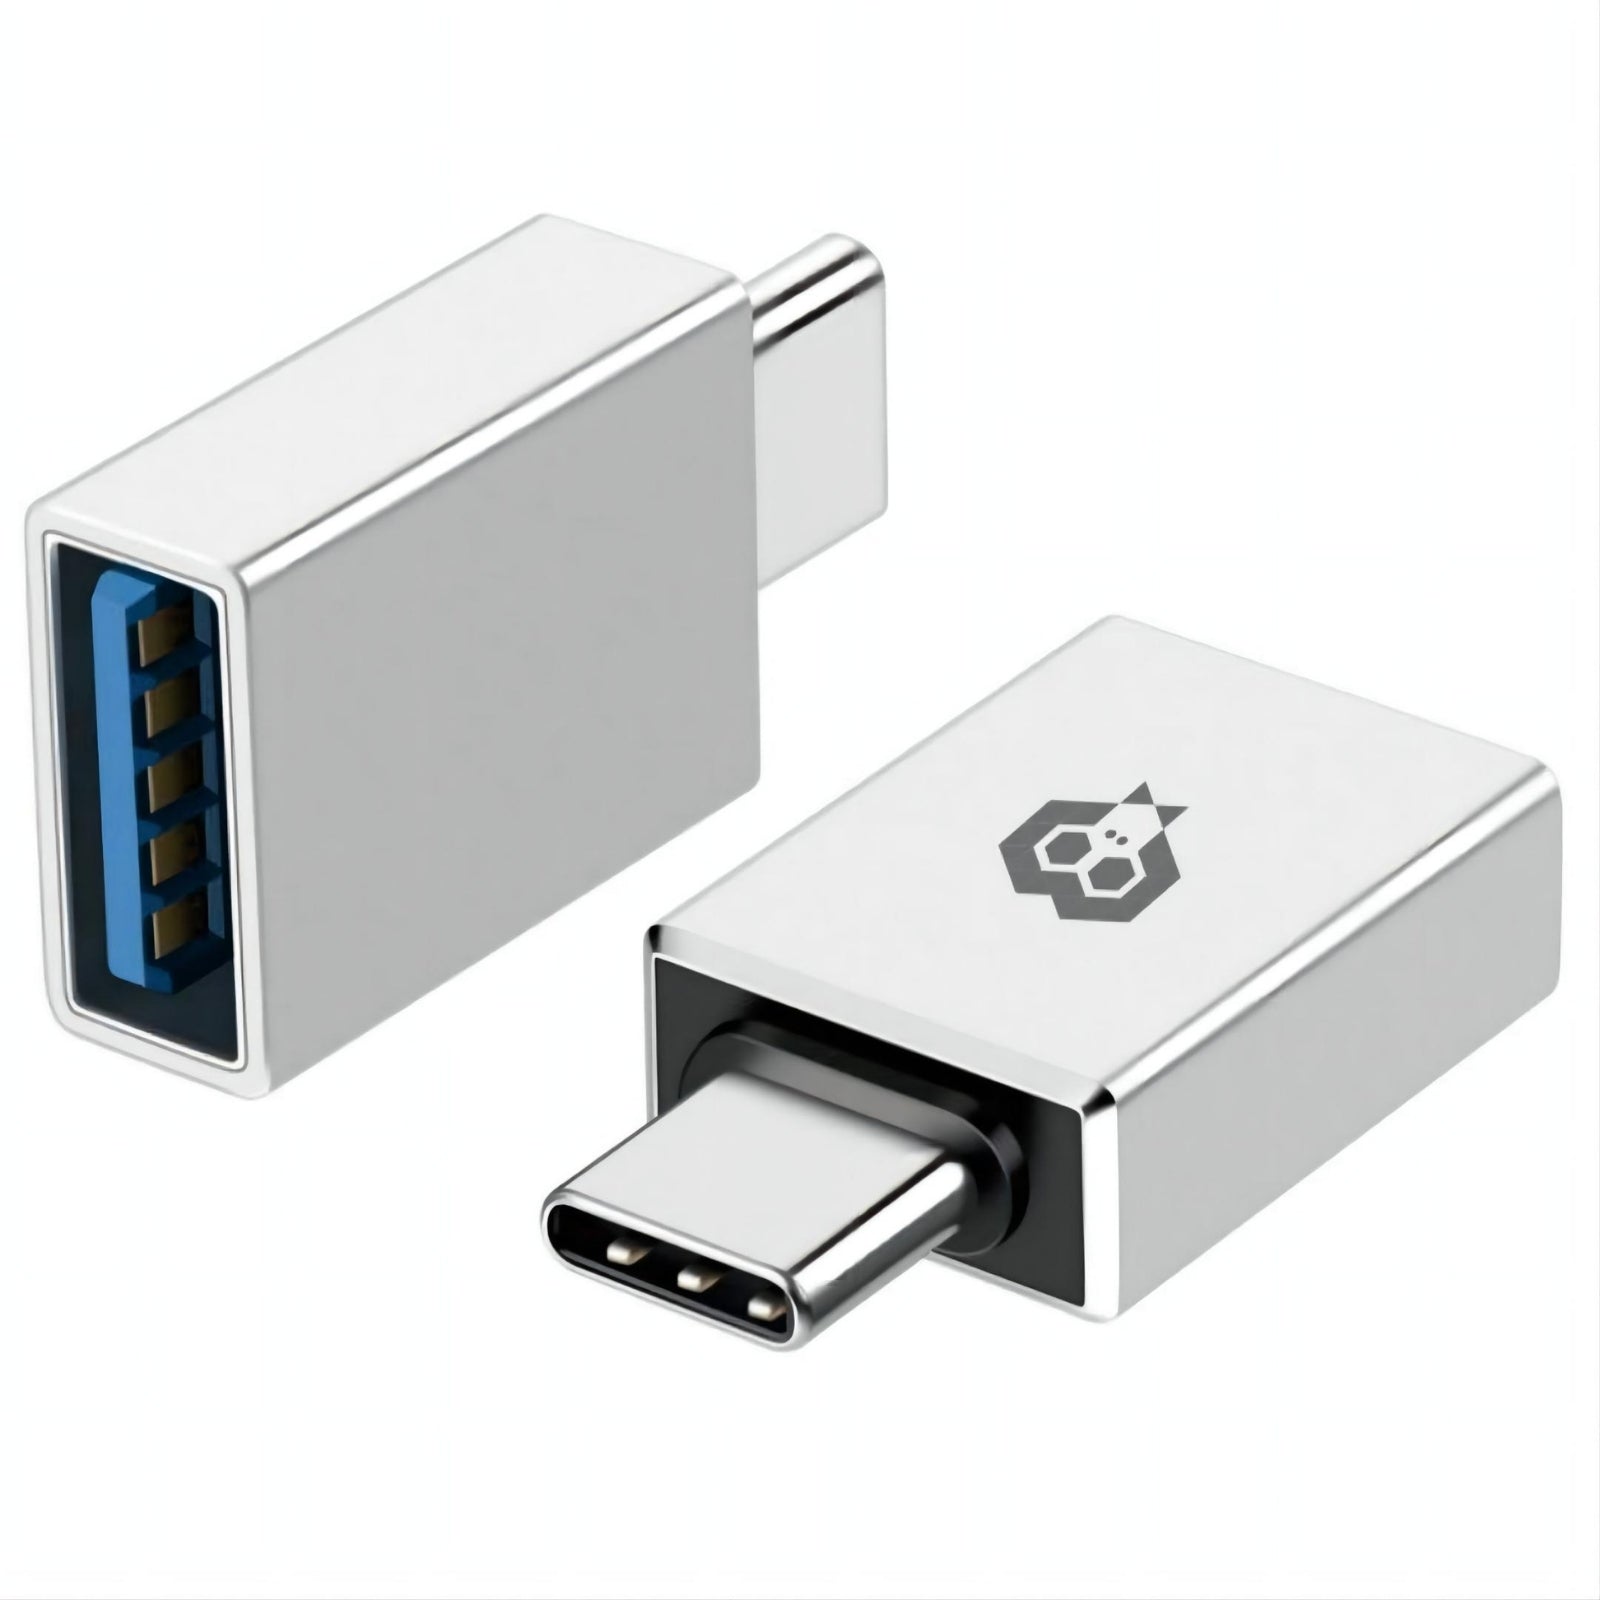 MonkeyTEC USB-C auf USB 3.0 Adapter für Macbook, iPhone, iPad, Android, Notebook und weitere USB-C Geräte